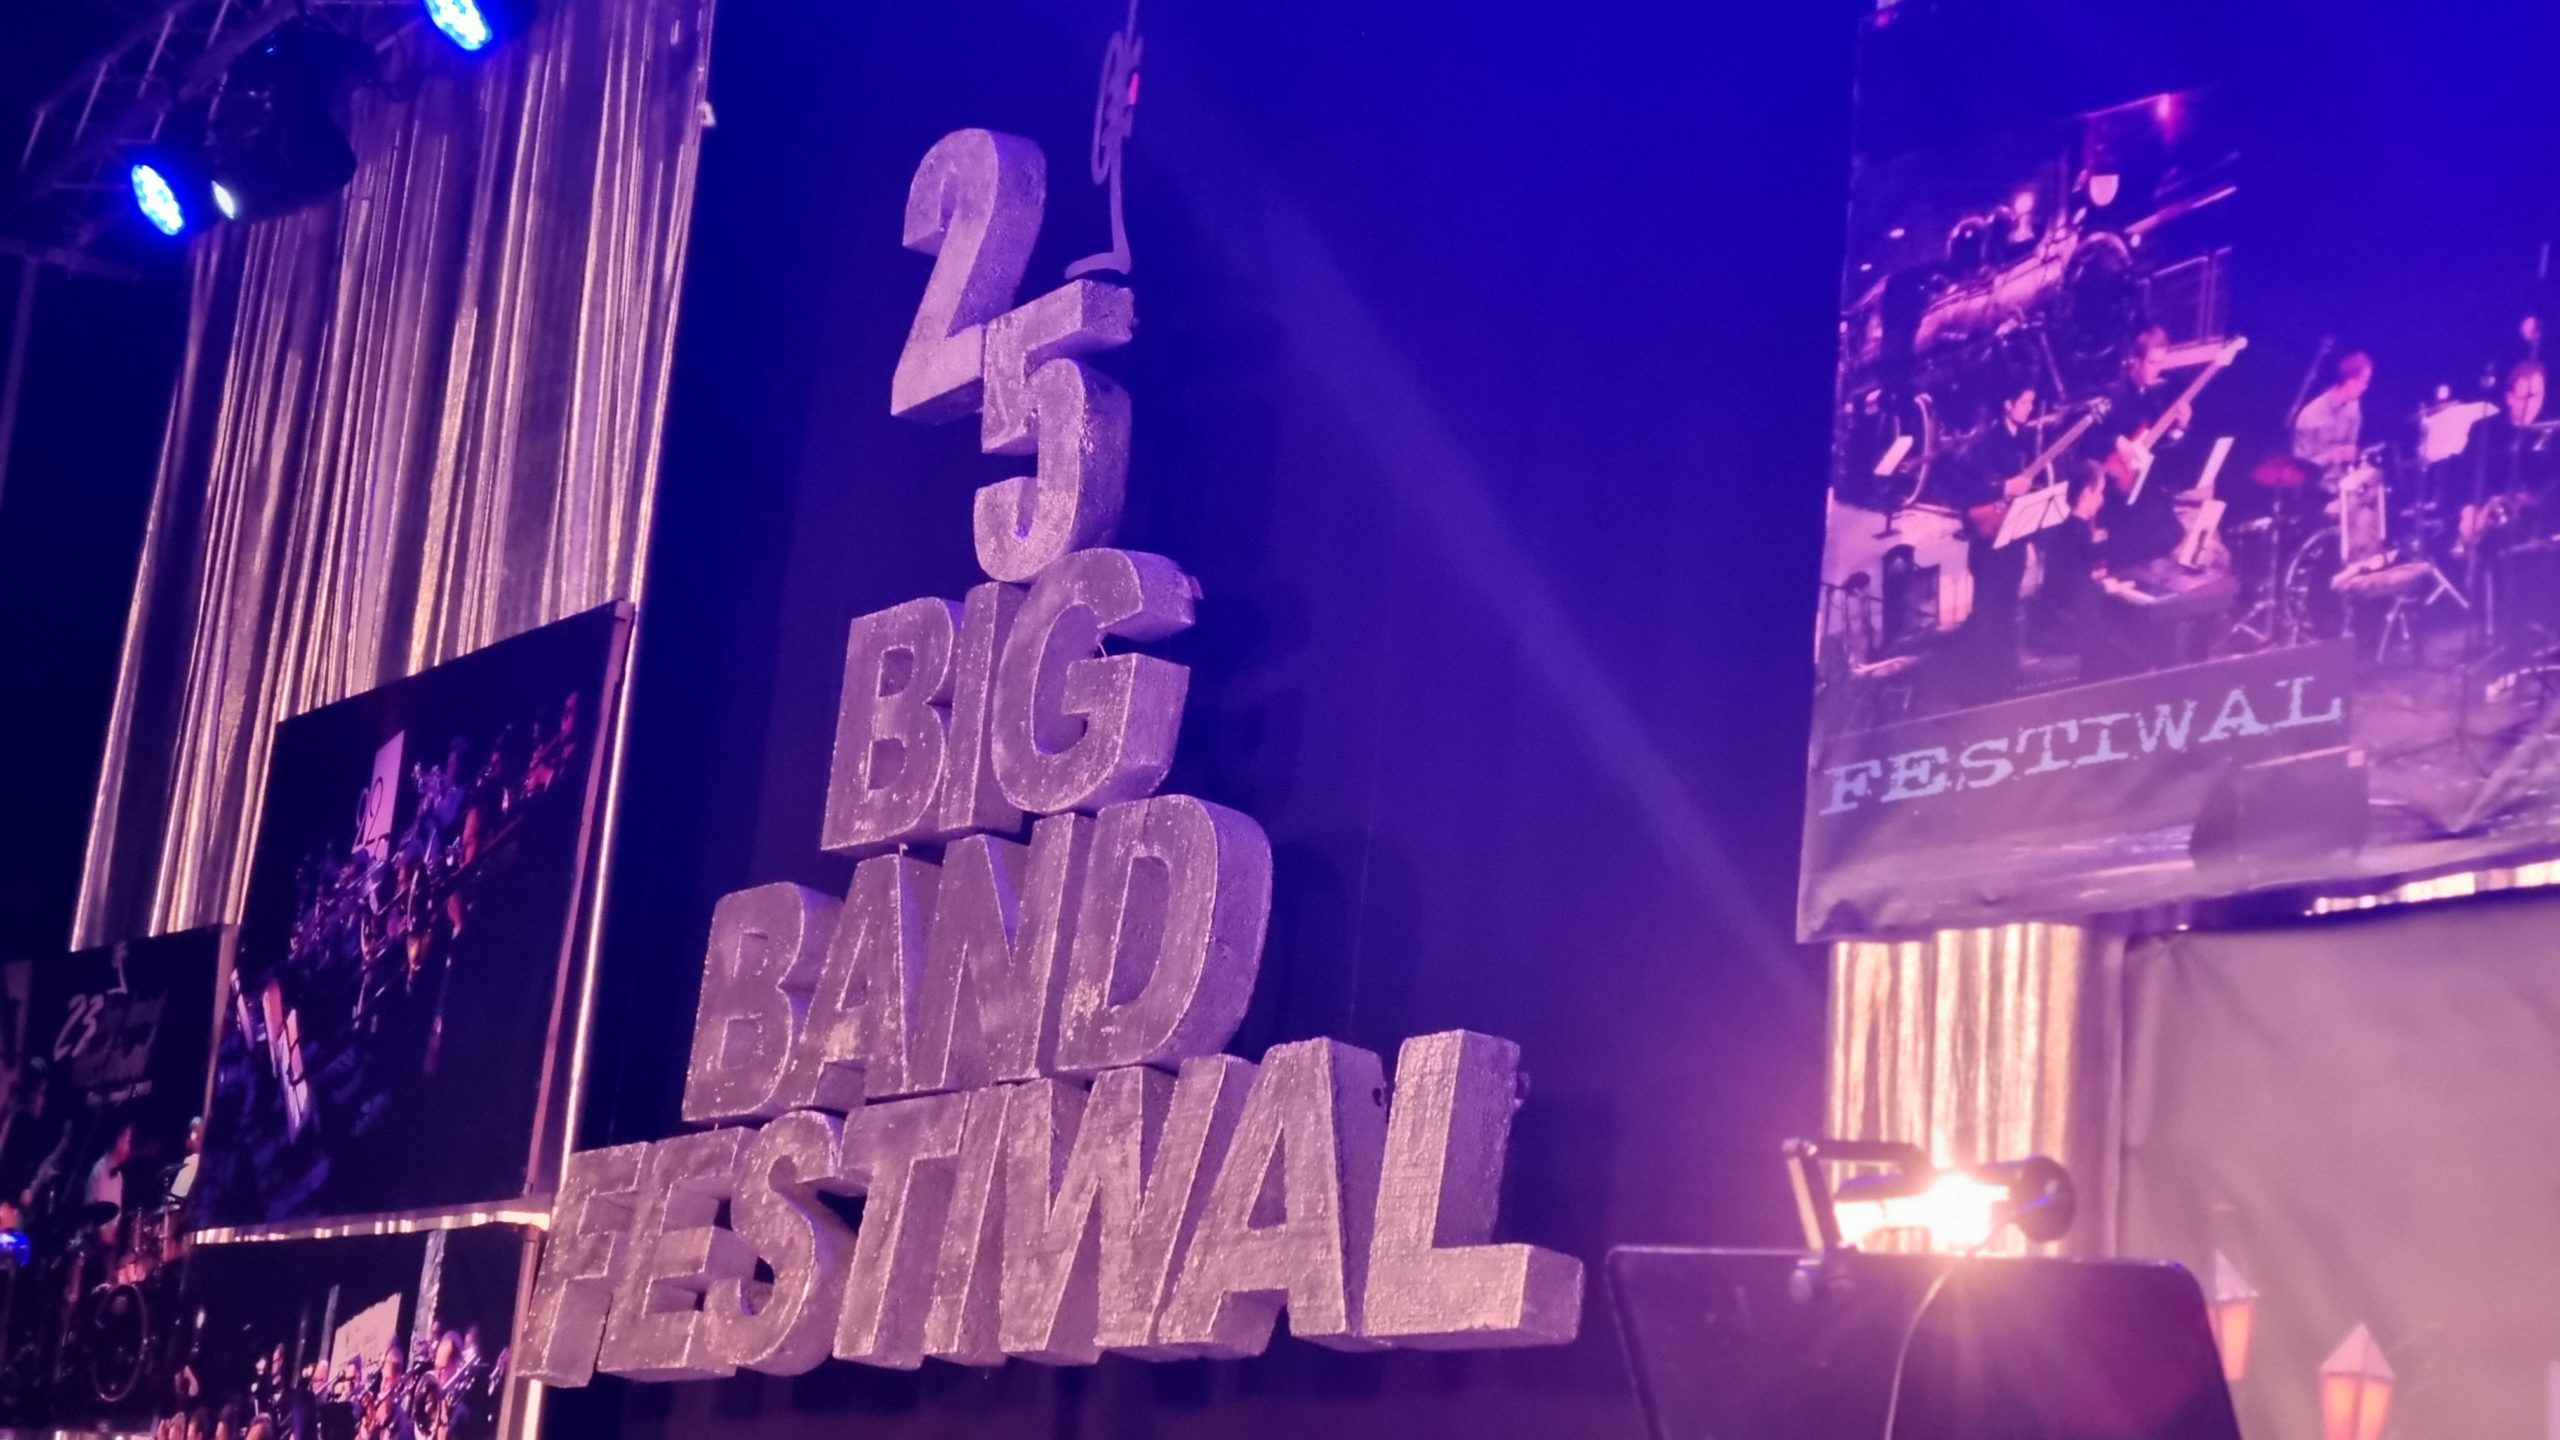 Za nami 25. jubileuszowa edycja Big Band Festiwal!